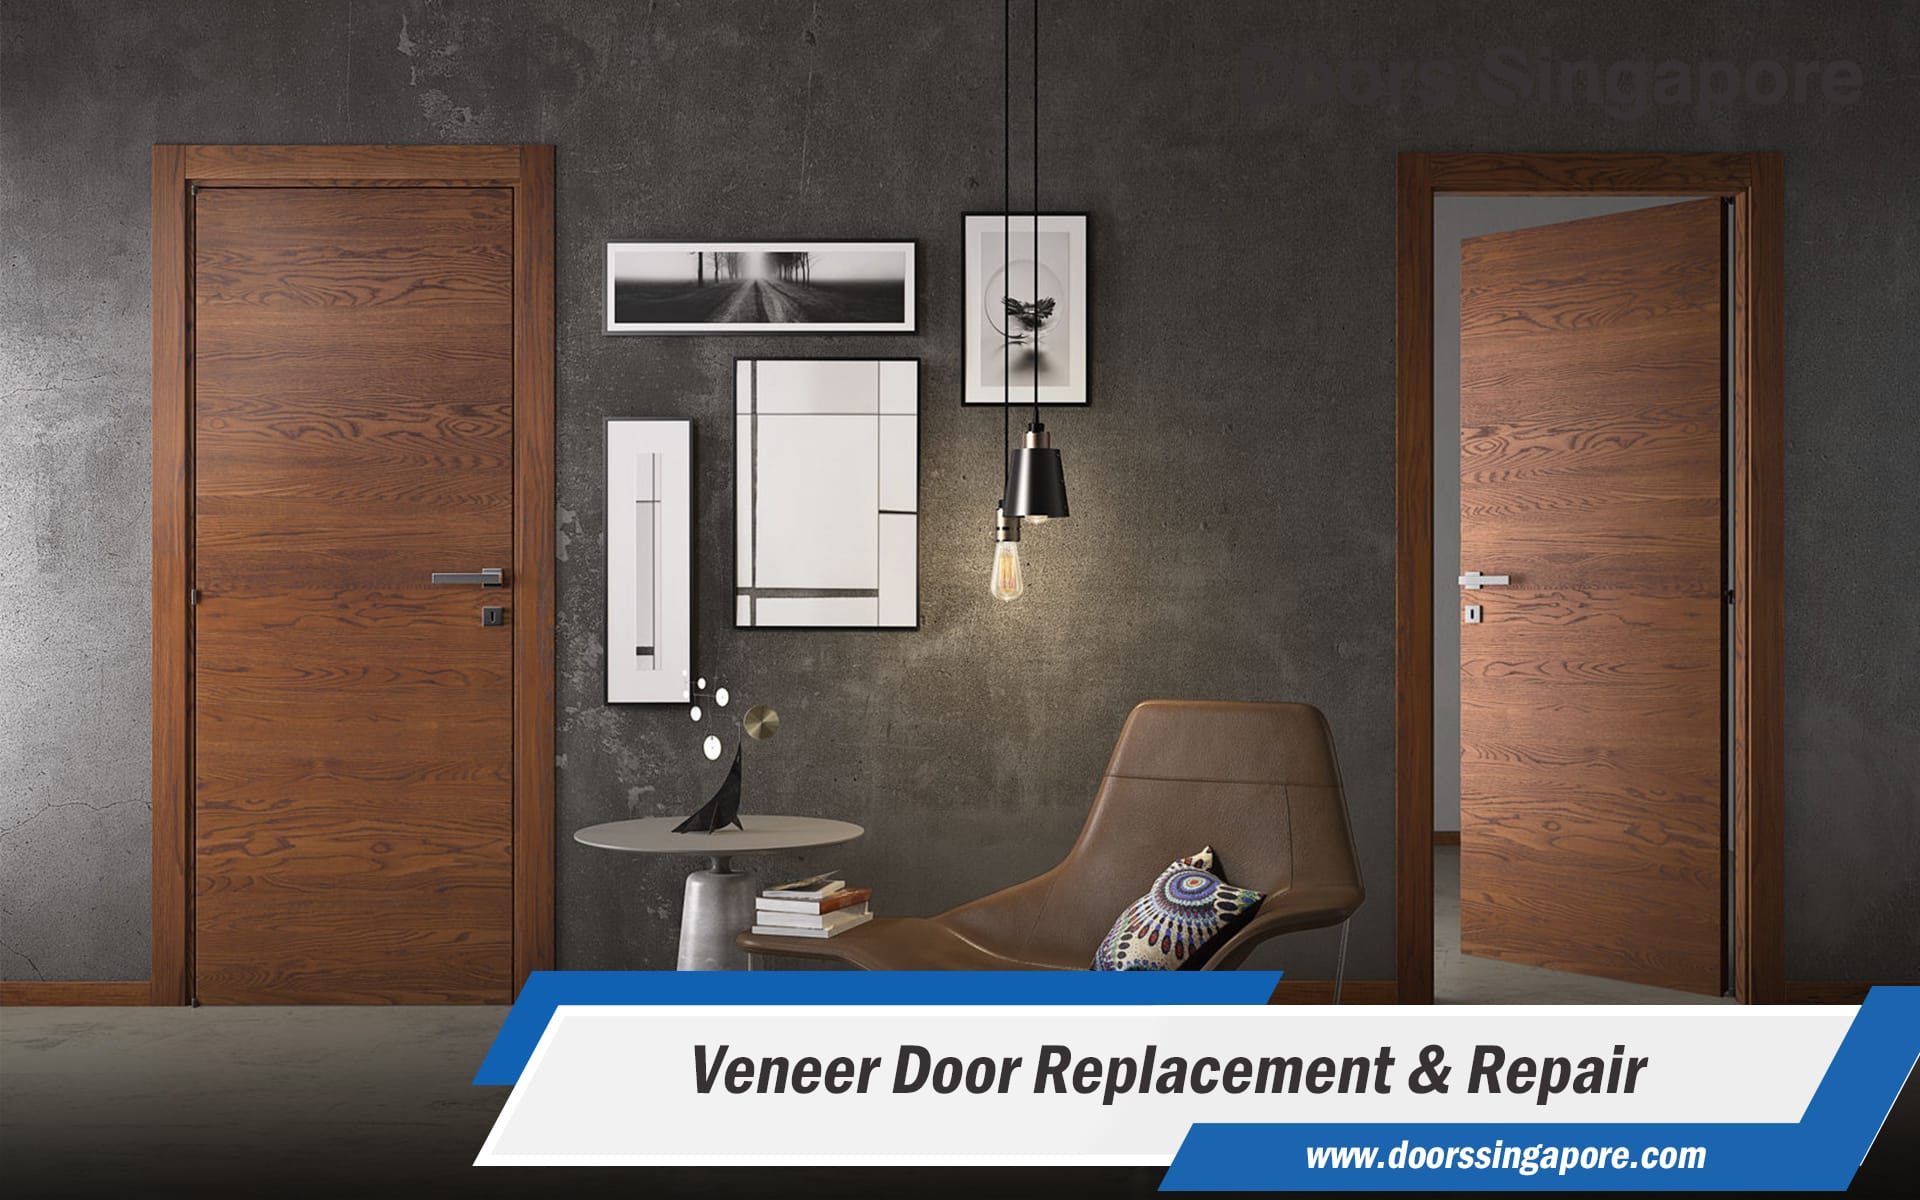 Veneer Door Replacement & Repair